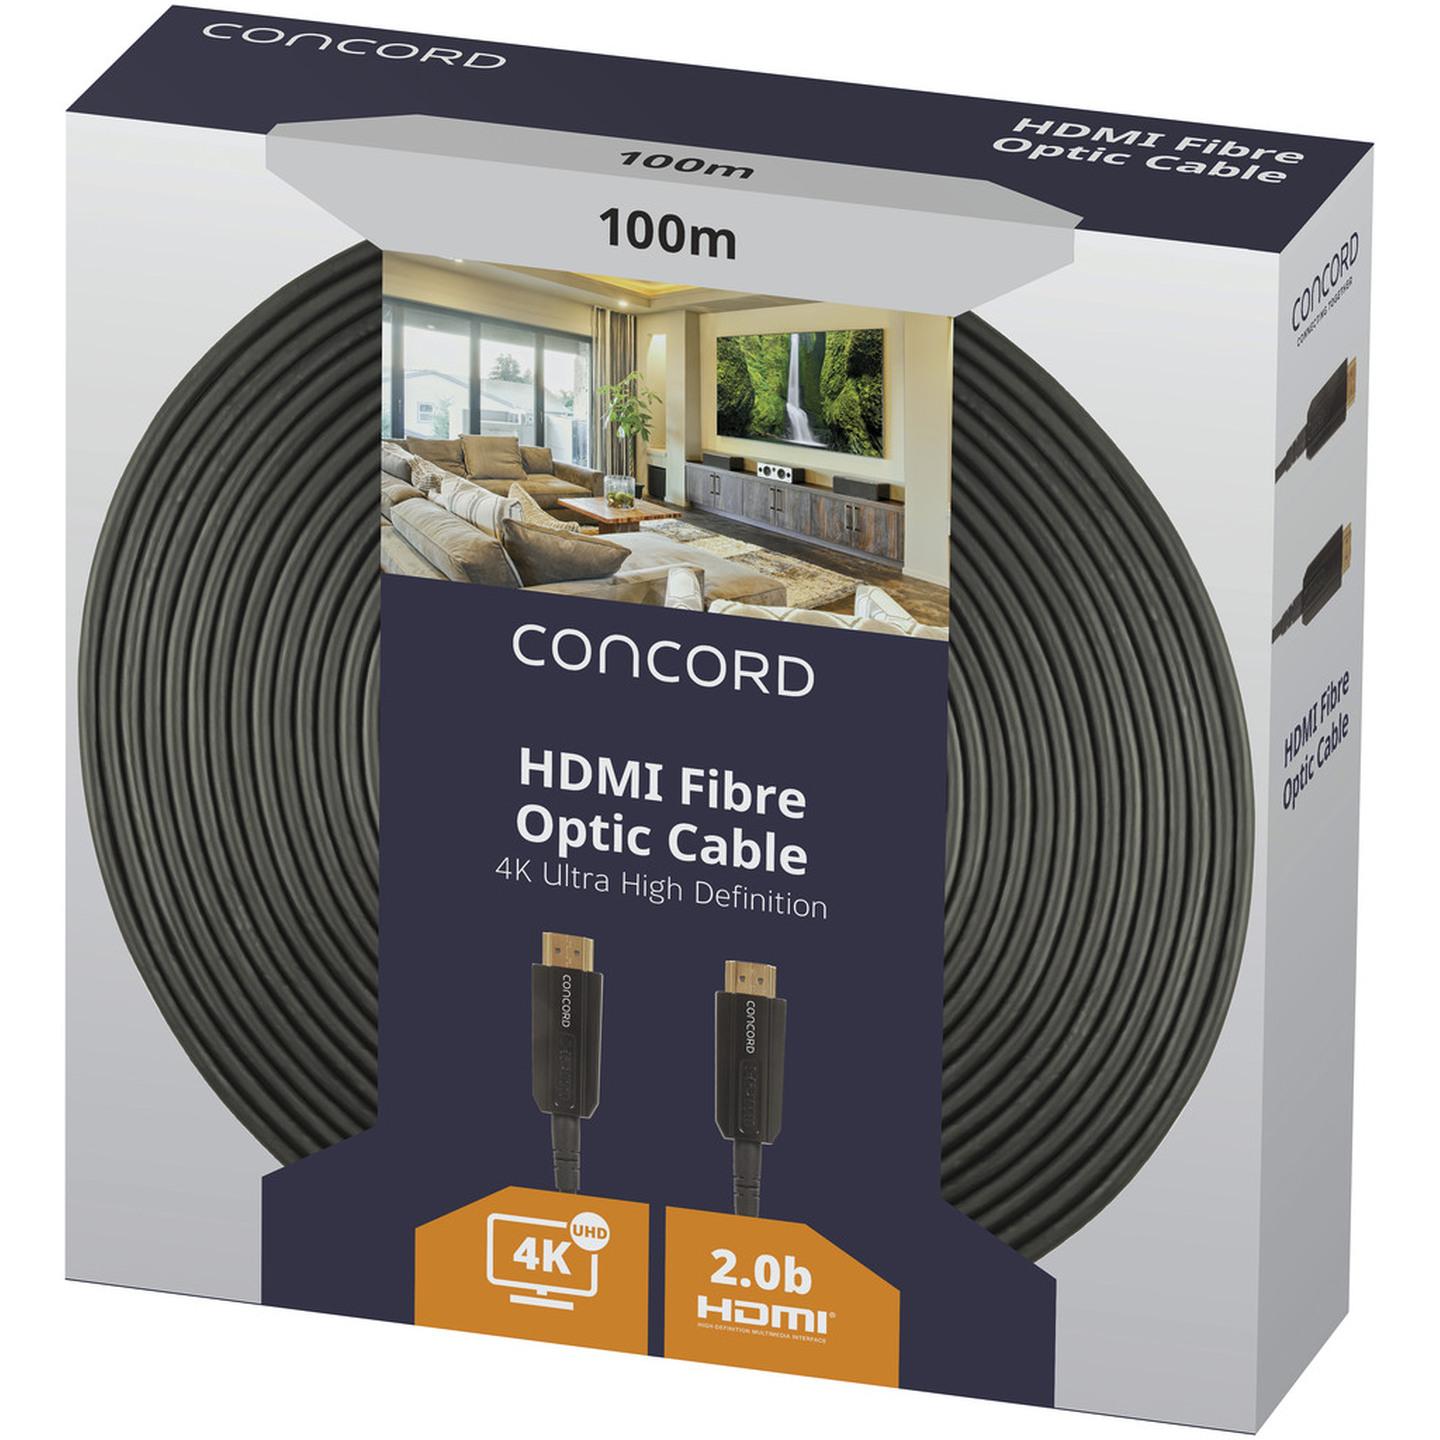 Concord 100m 4K HDMI Fibre Optic Cable